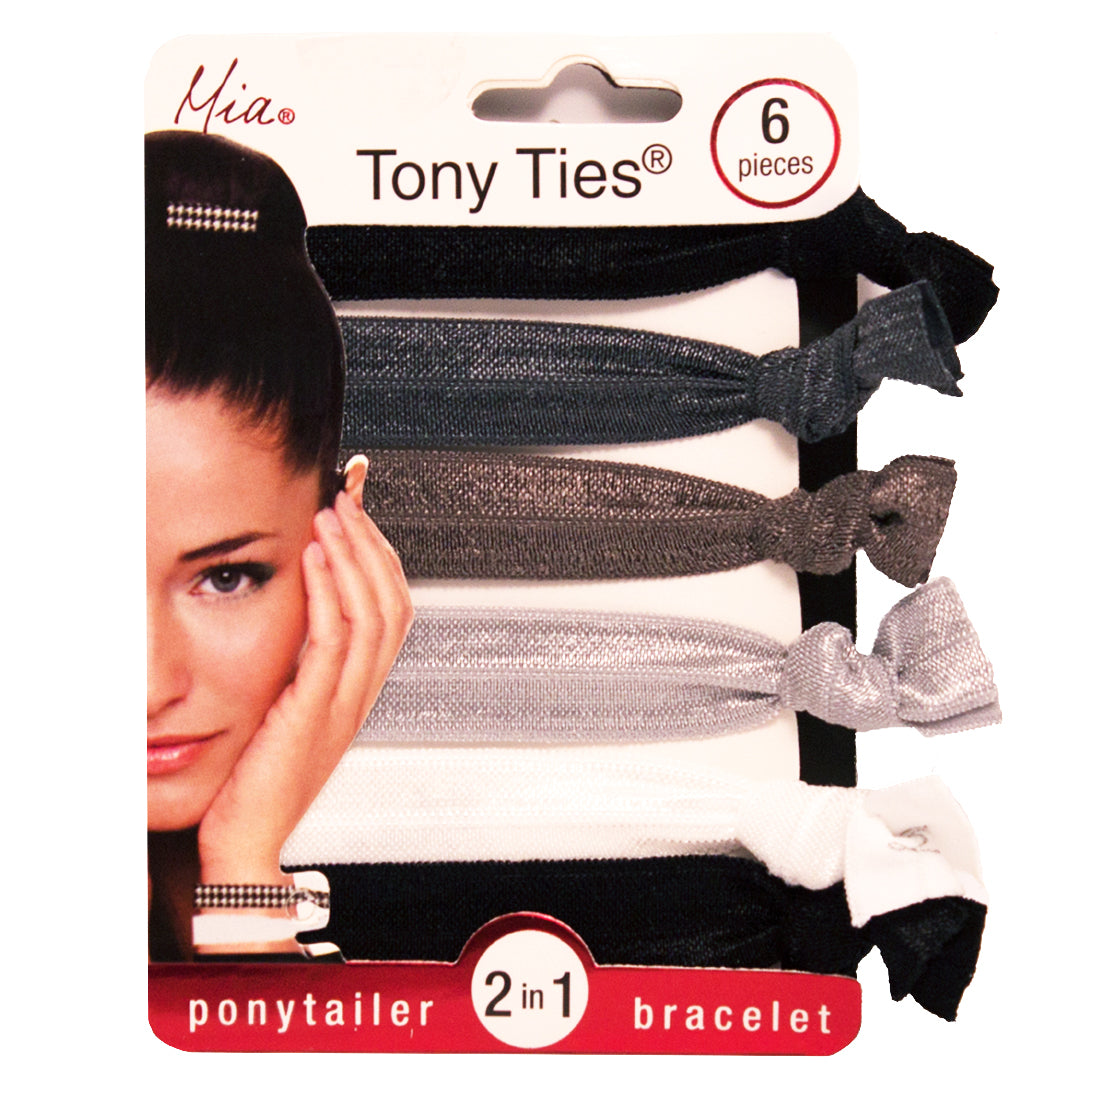 Mia® Tony Ties® basic knotted ribbon hair ties - black, gray, silver, black - #MiaBeauty #MiaKaminski  #hair #beauty #hairties